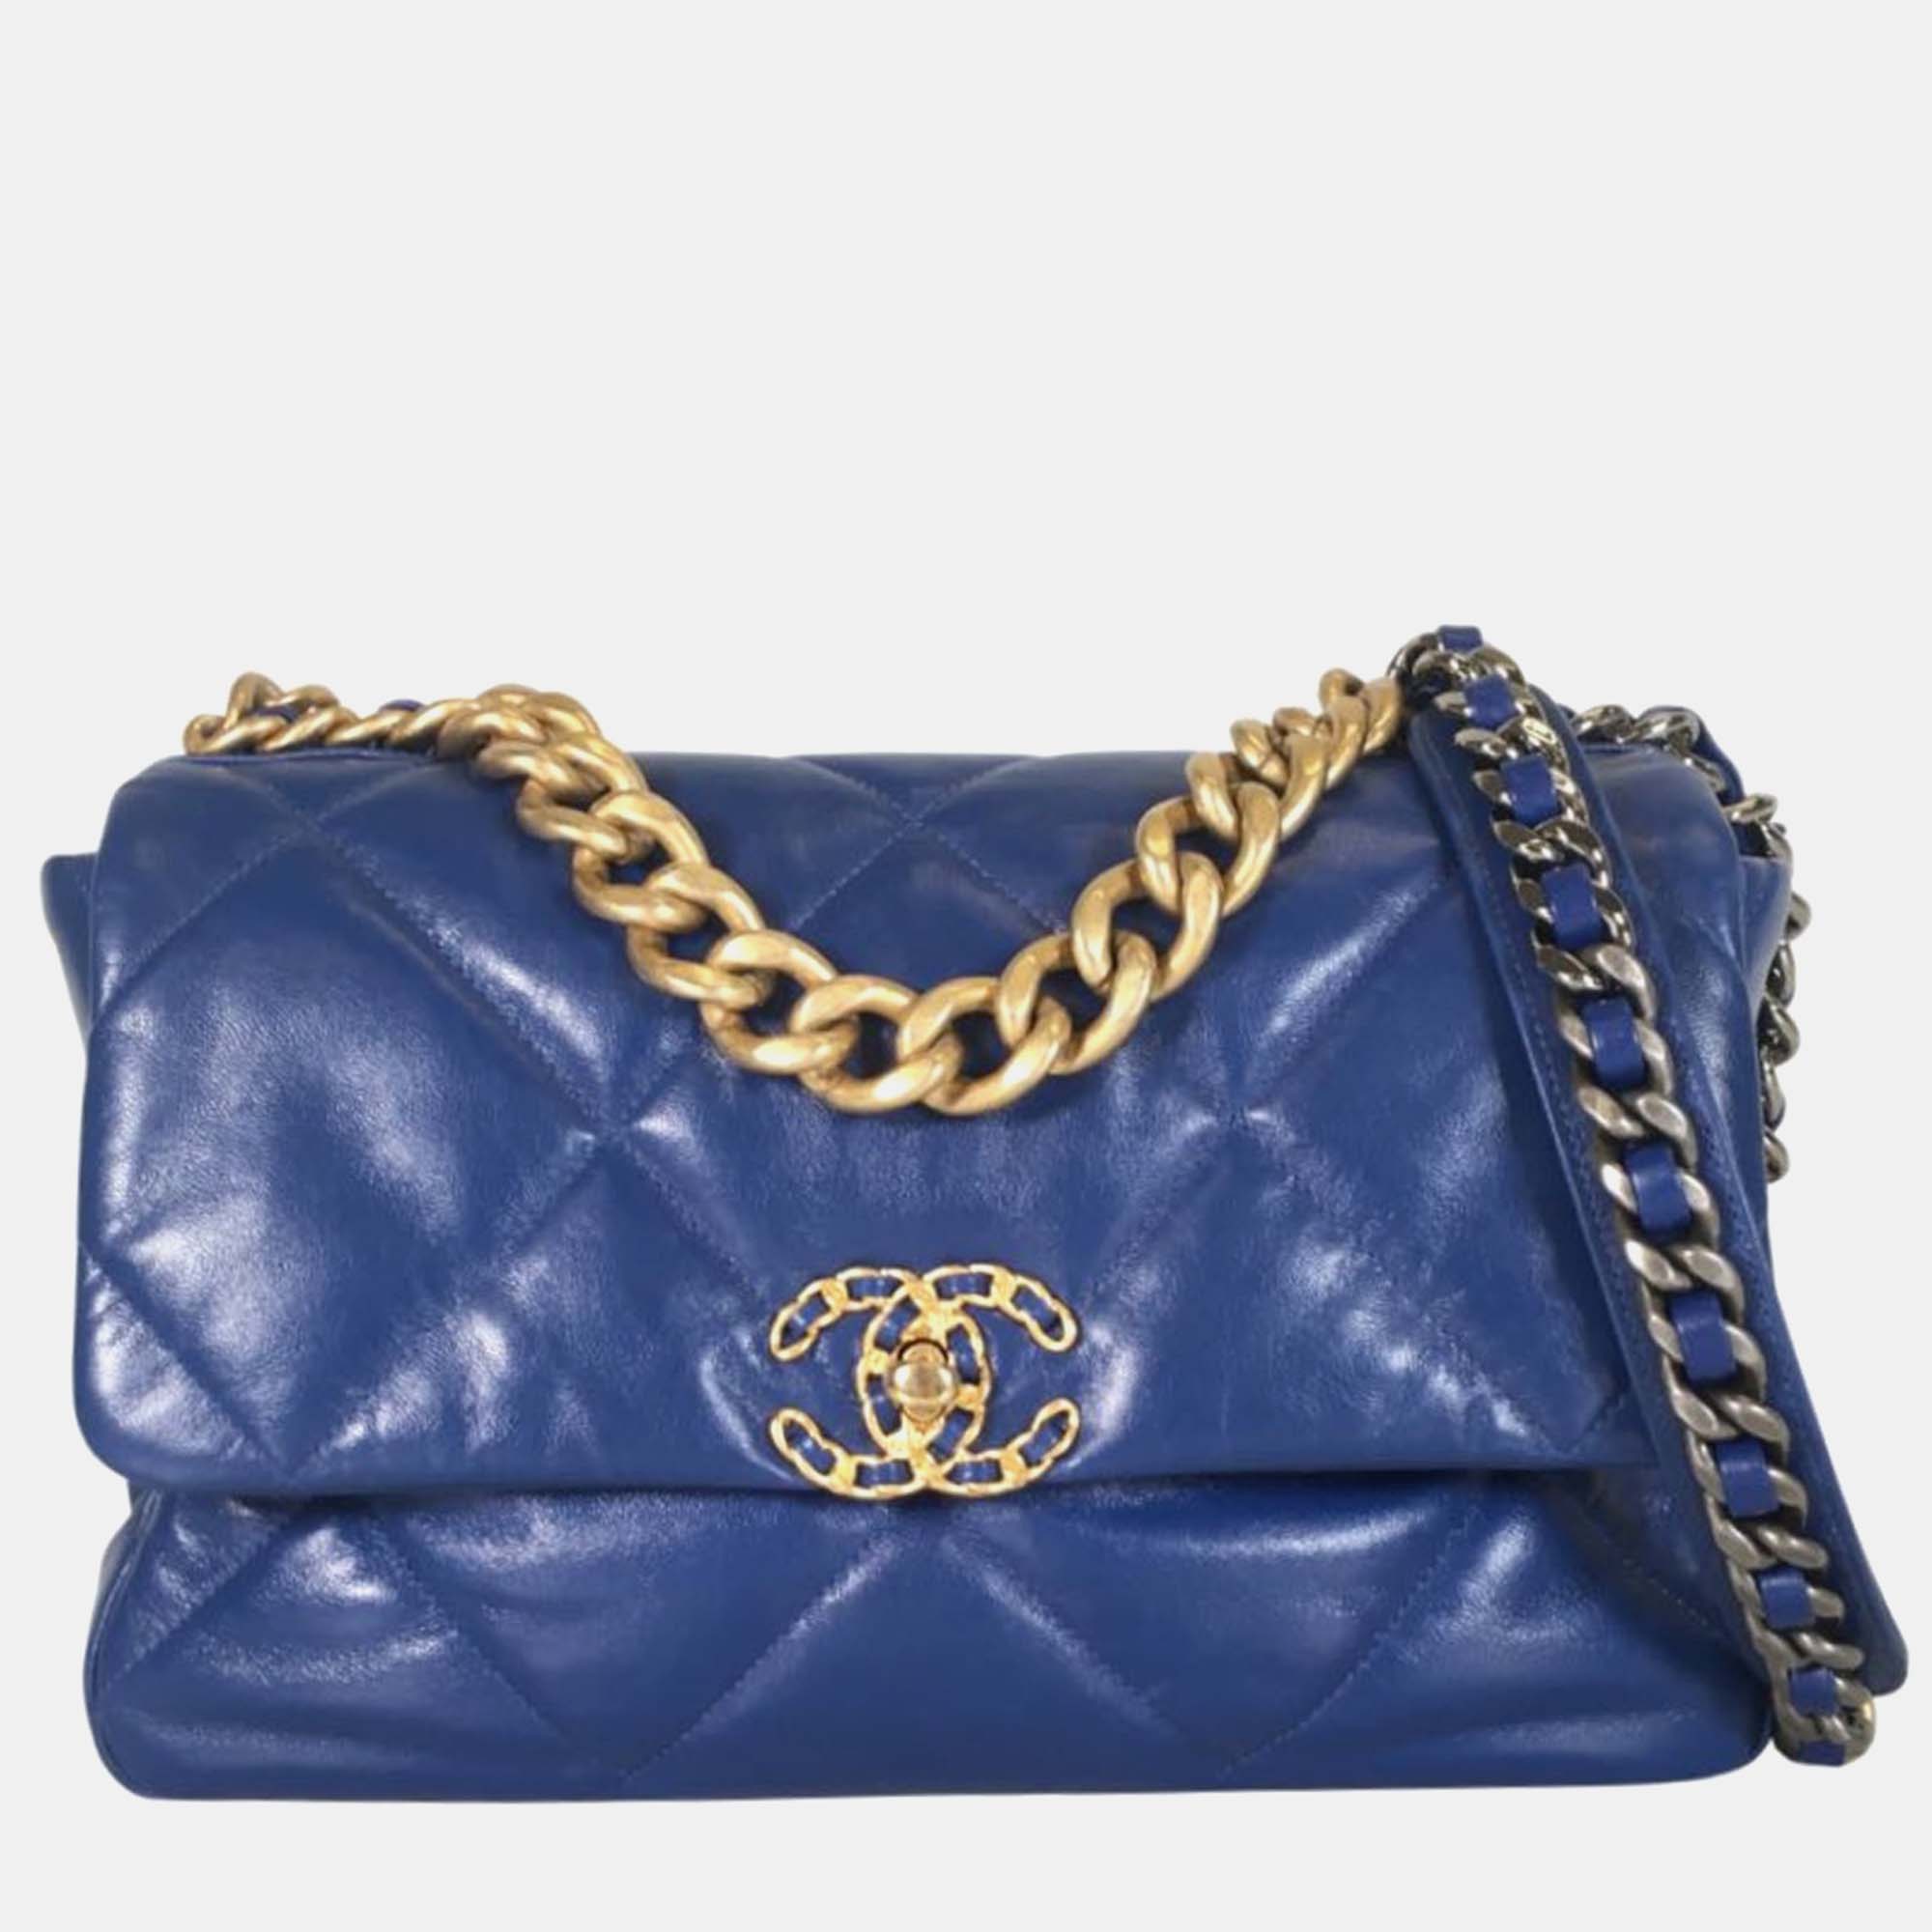 Chanel blue leather 19 large shoulder bag